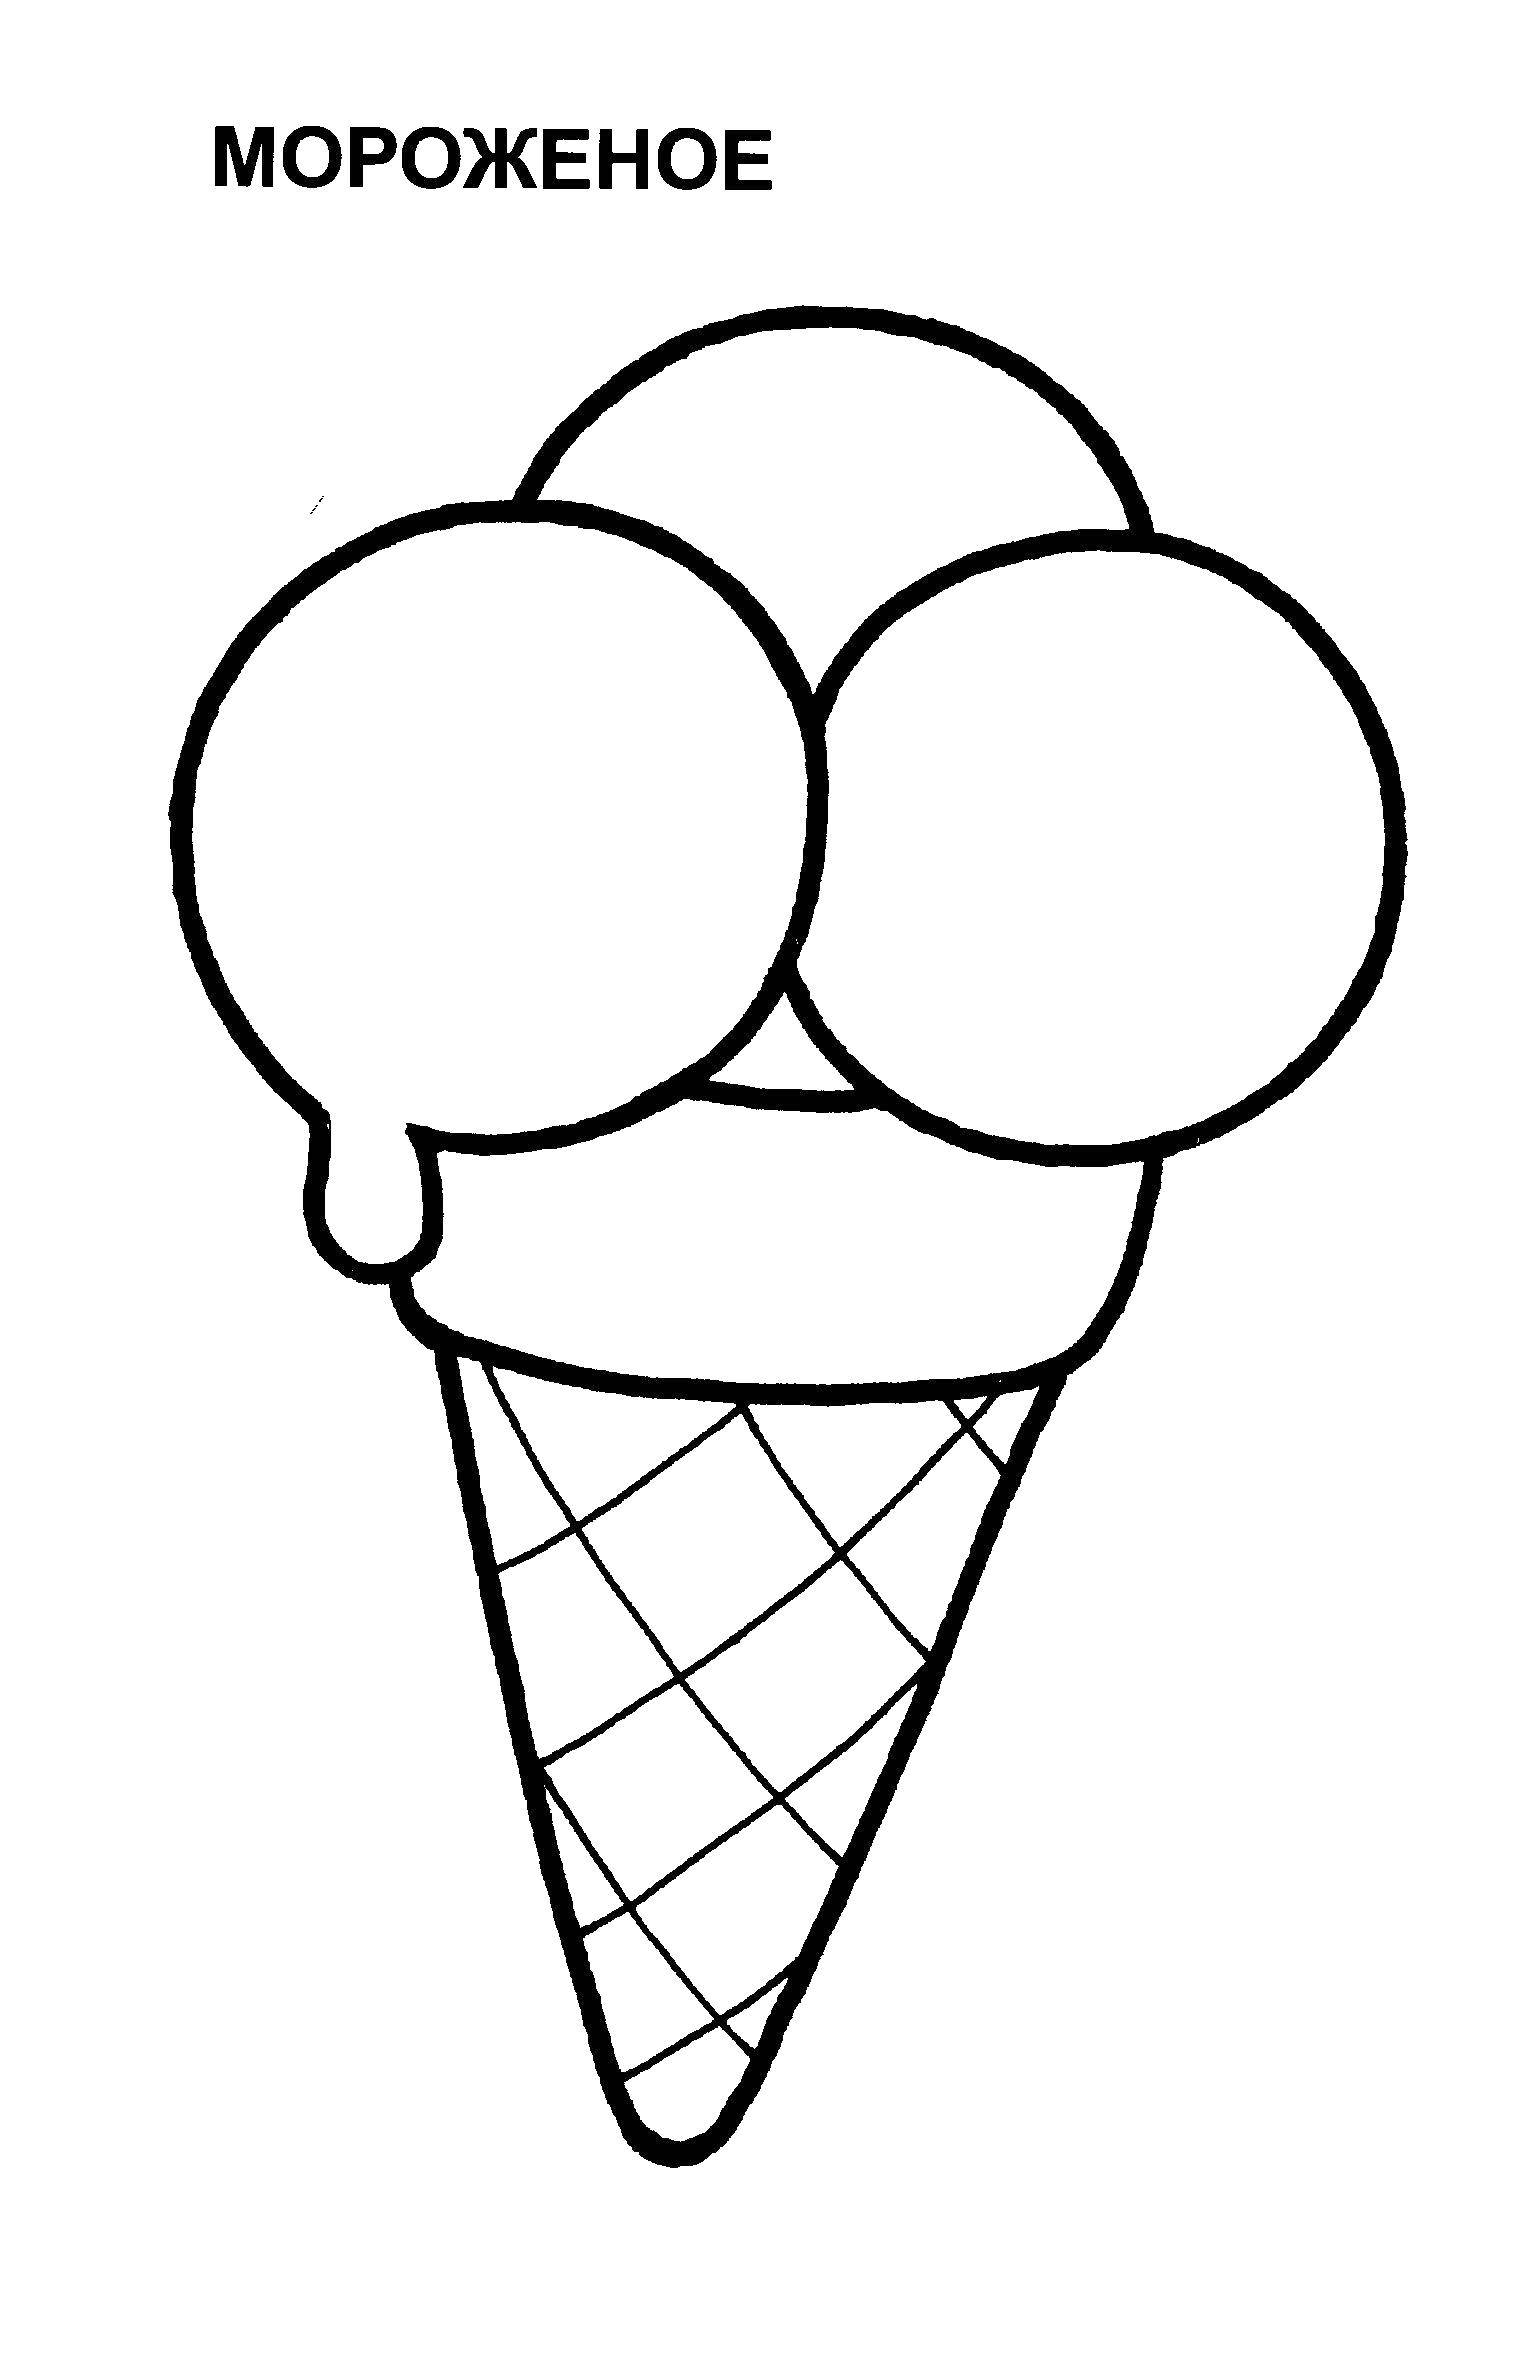 Картинки раскраски легкие. Мороженое раскраска для детей. Мороженое картинка для детей раскраска. Раскраска мороженгог. Мороженое трафарет.